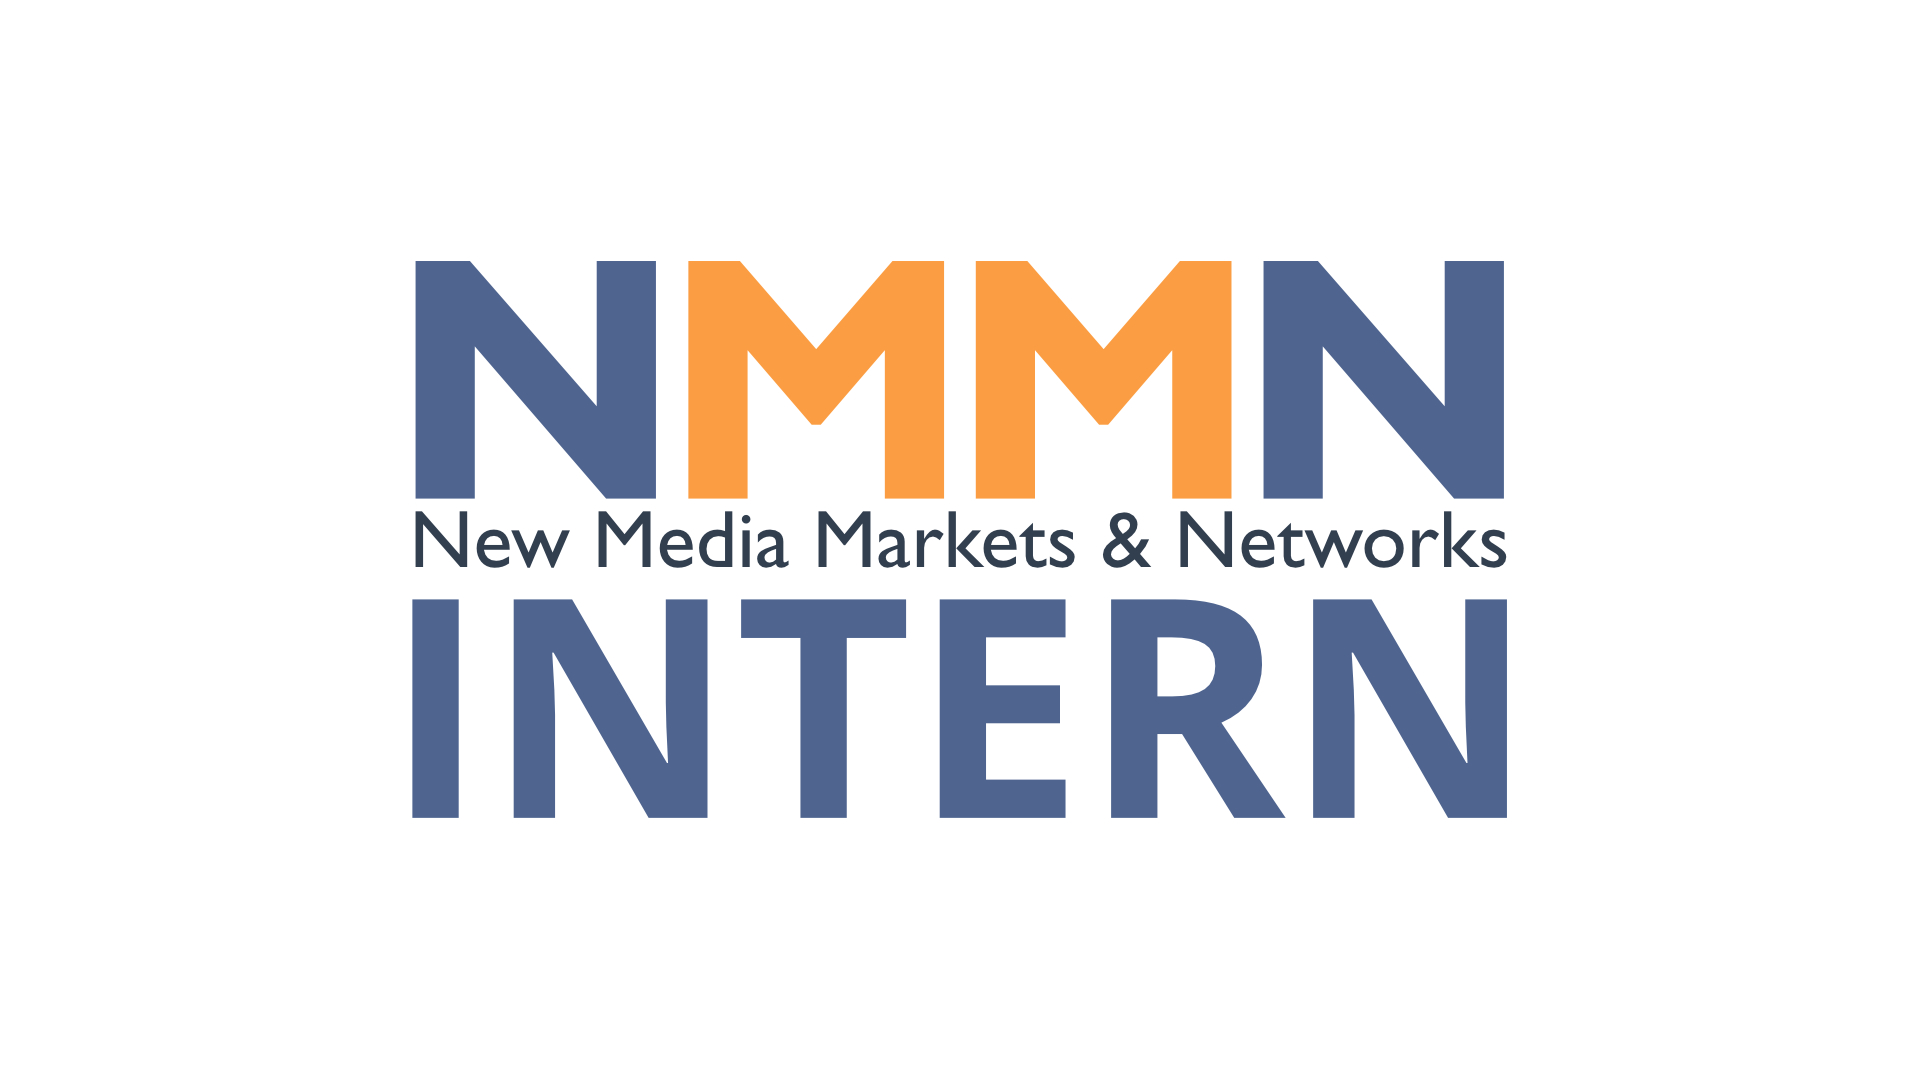 NMMN INTERN - Informationen über uns oder für unsere Kunden